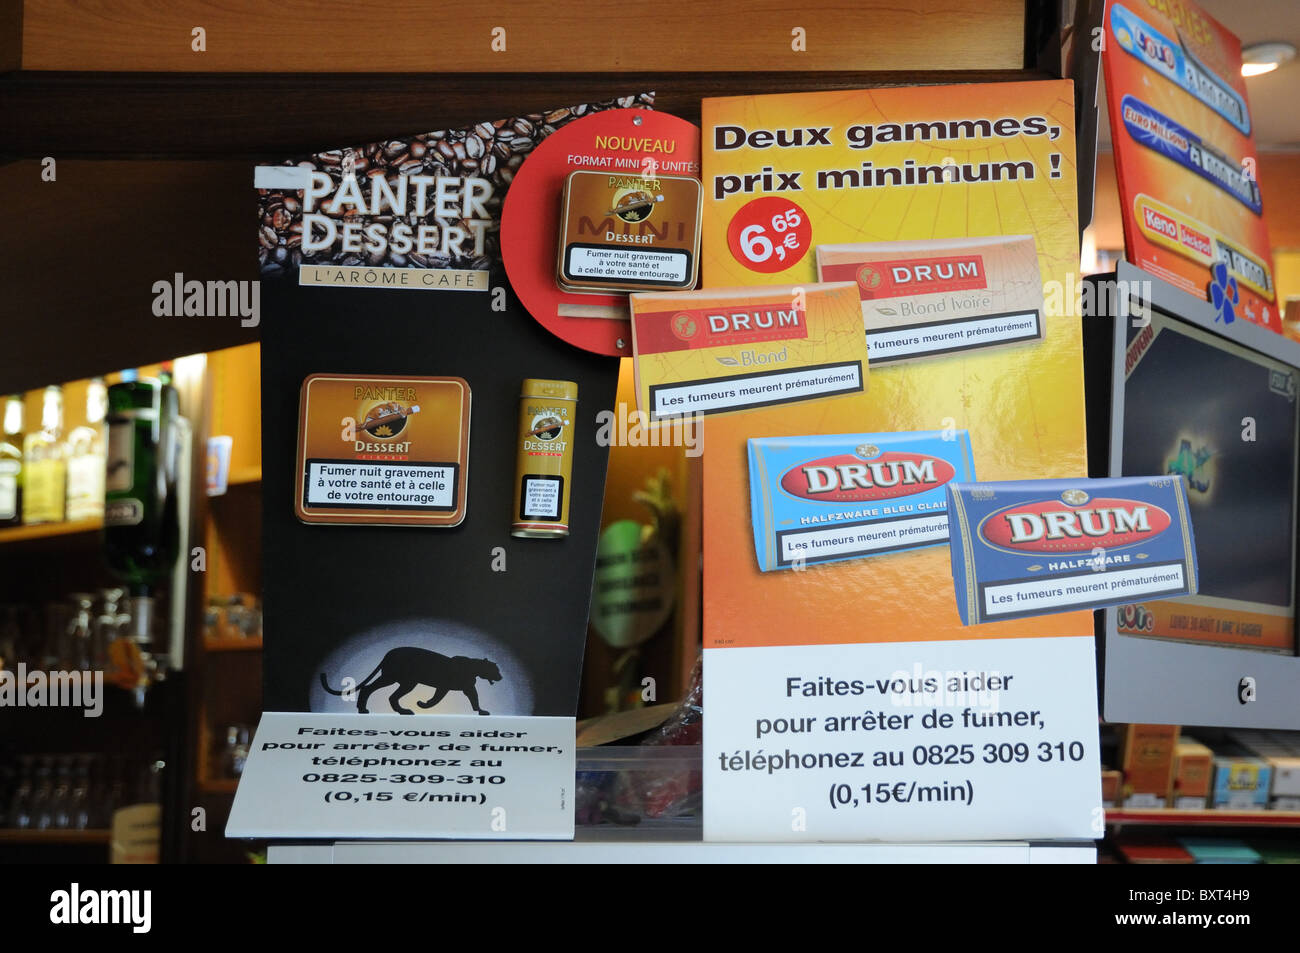 Afficher la fenêtre du tabac et des cigarettes avec des avertissements relatifs à la santé Crepy en Valois France Banque D'Images